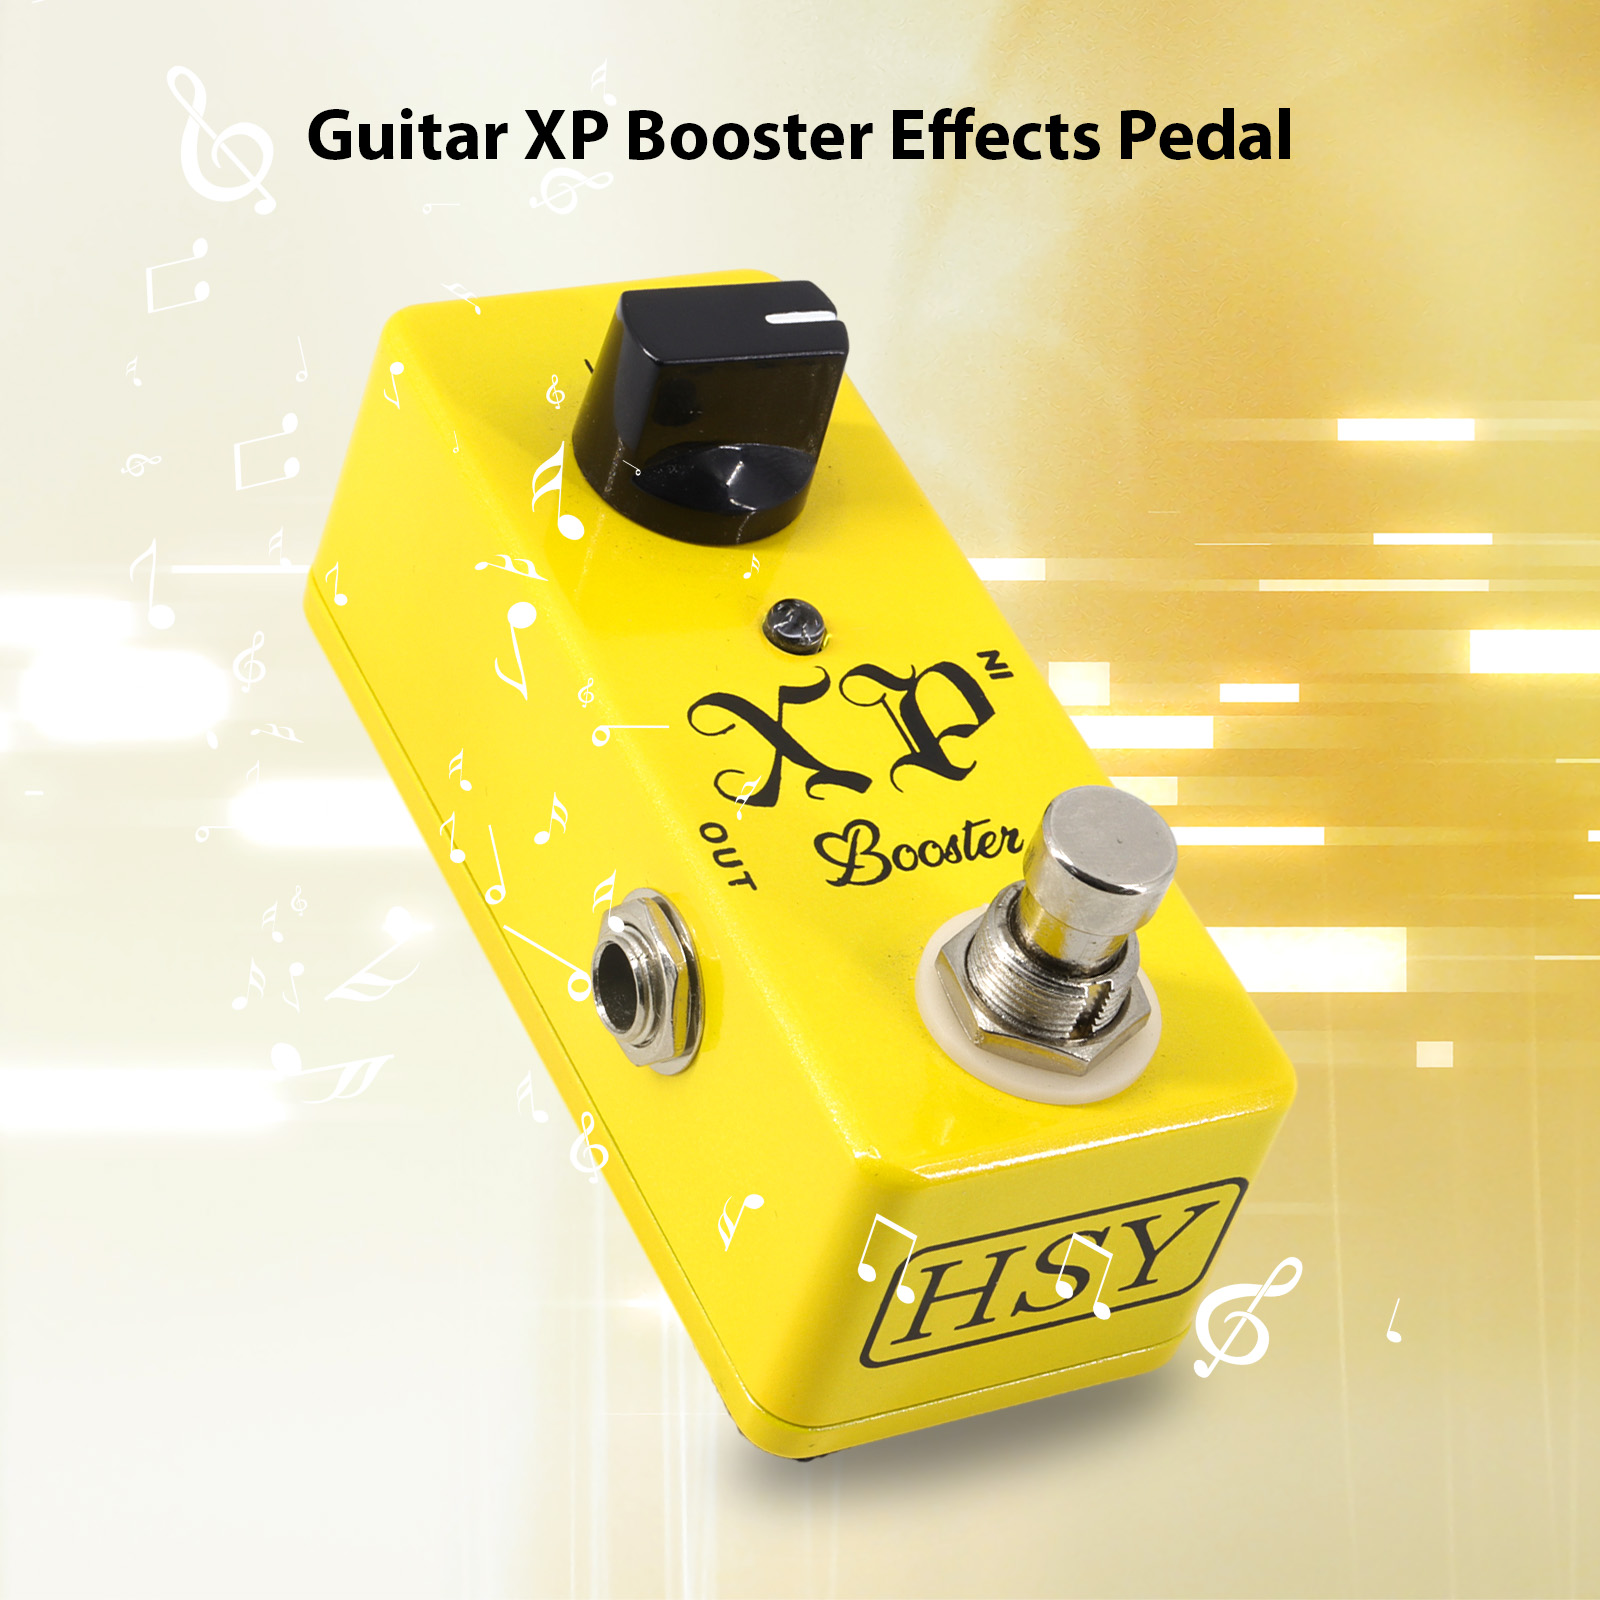 Guitar XP Booster Pedal tạo hiệu ứng cho đàn ghita điện Phơ cục true bypass vỏ sò hợp kim kẽm DC 9V 6.35 mét đầu vào/đầu ra giao diện Mini Guitar XP Booster Effector